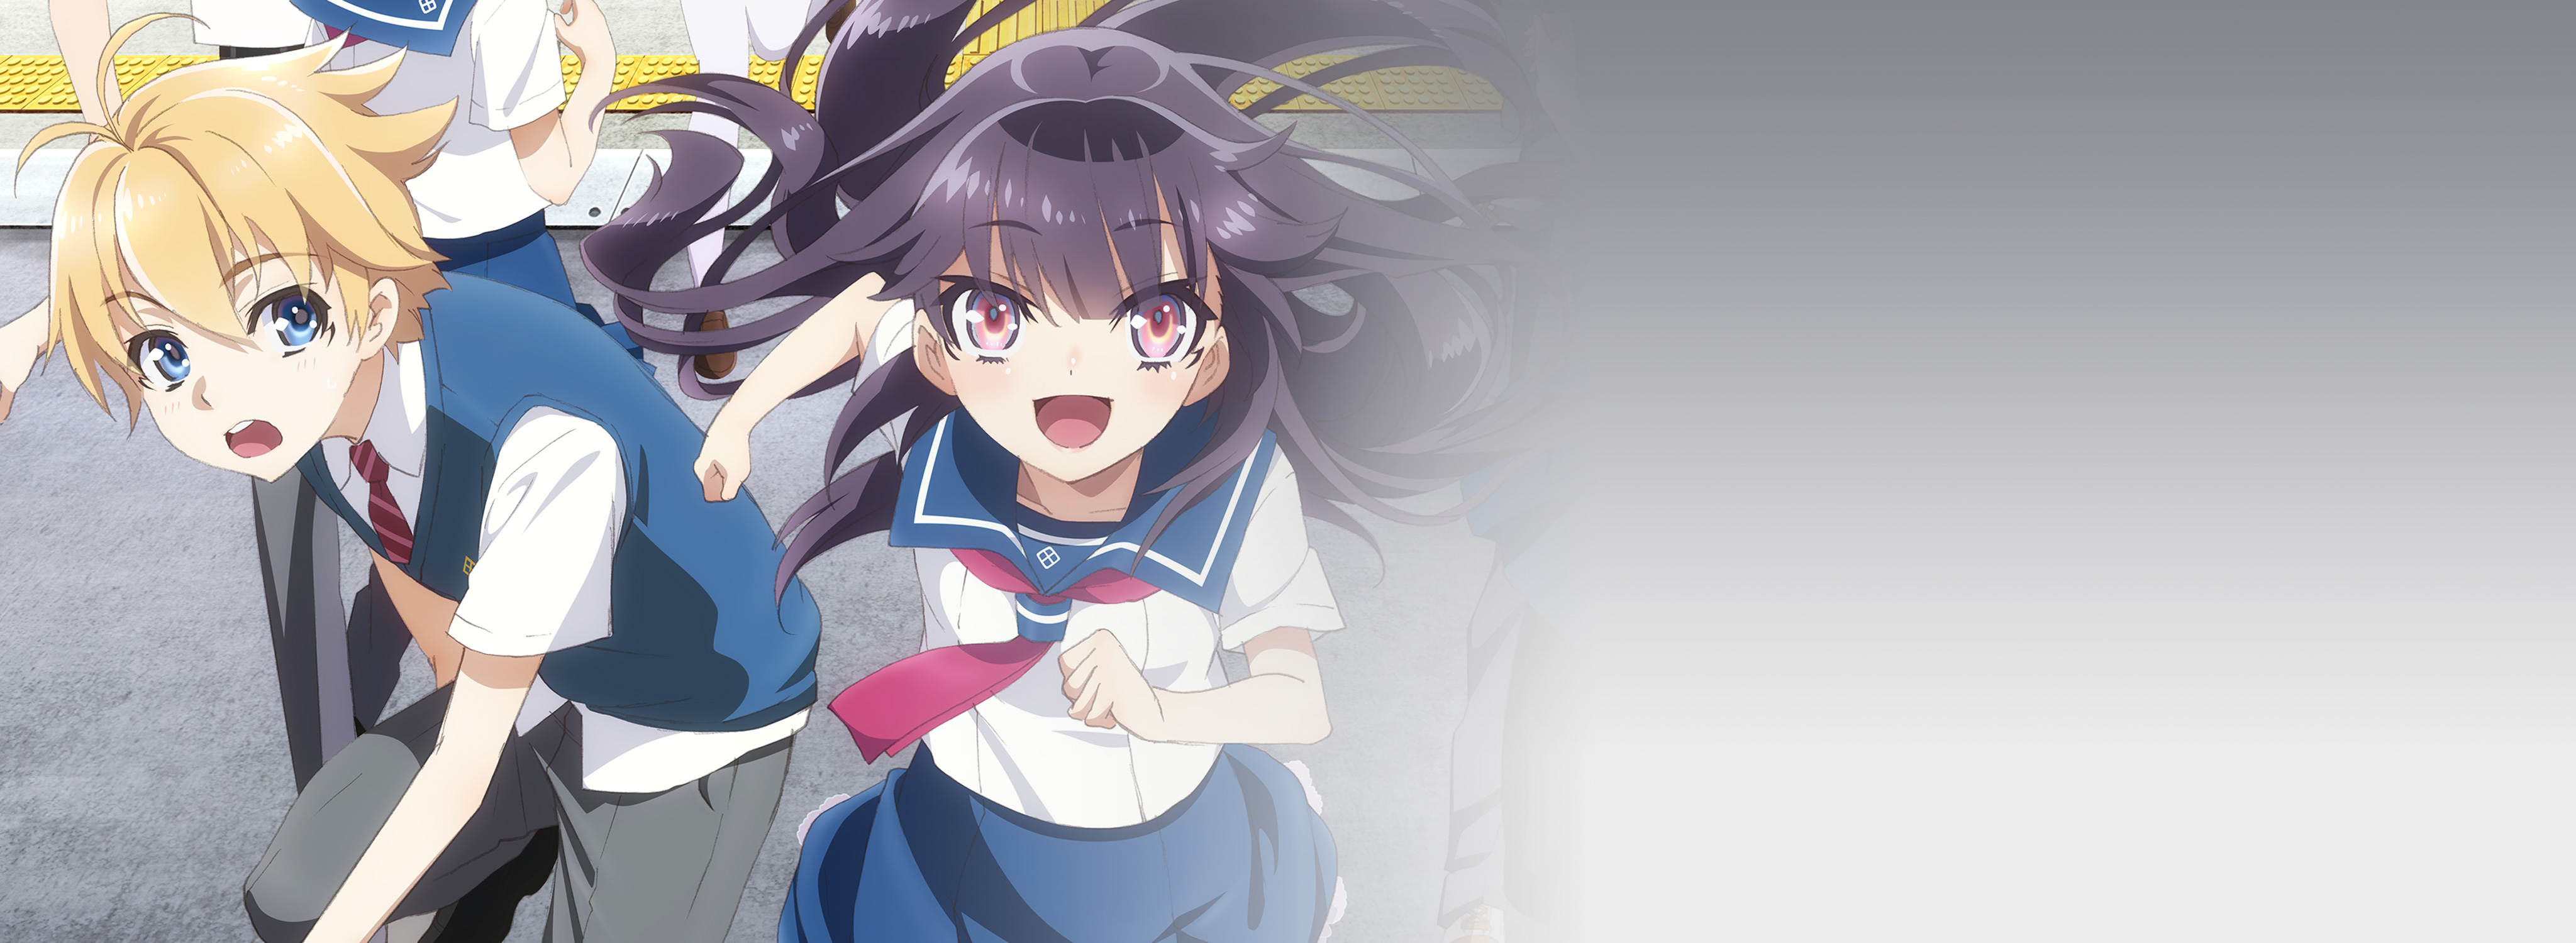 Anime Haruchika: Haruta to Chika wa Seishun Suru HD Wallpaper